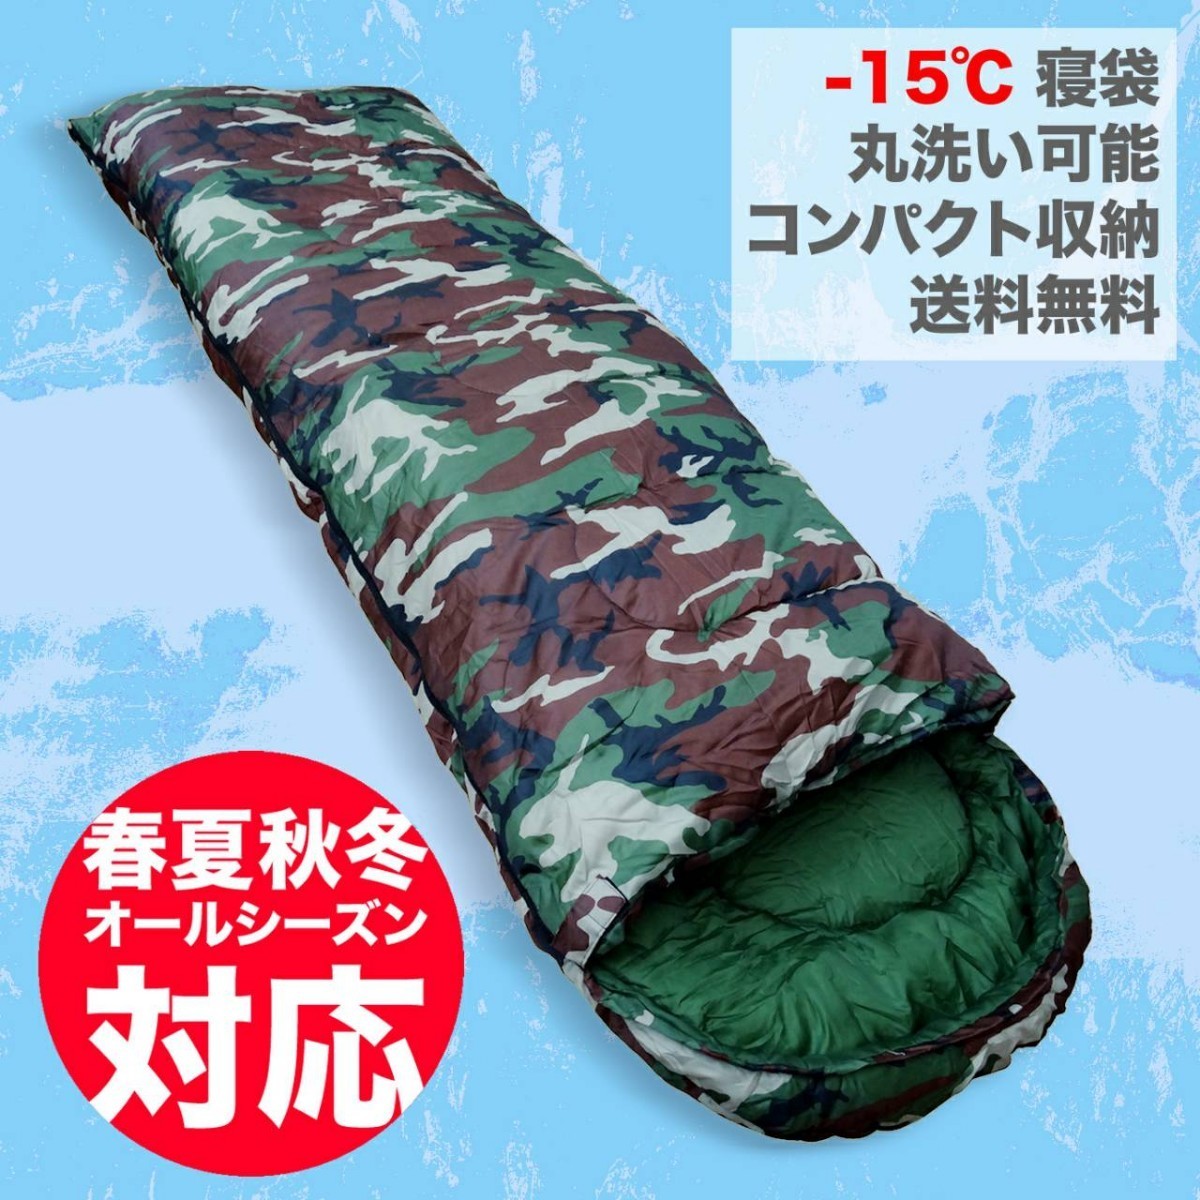 【本日最大値下げ】寝袋 シュラフ 最低使用温度 -15度 1650g 